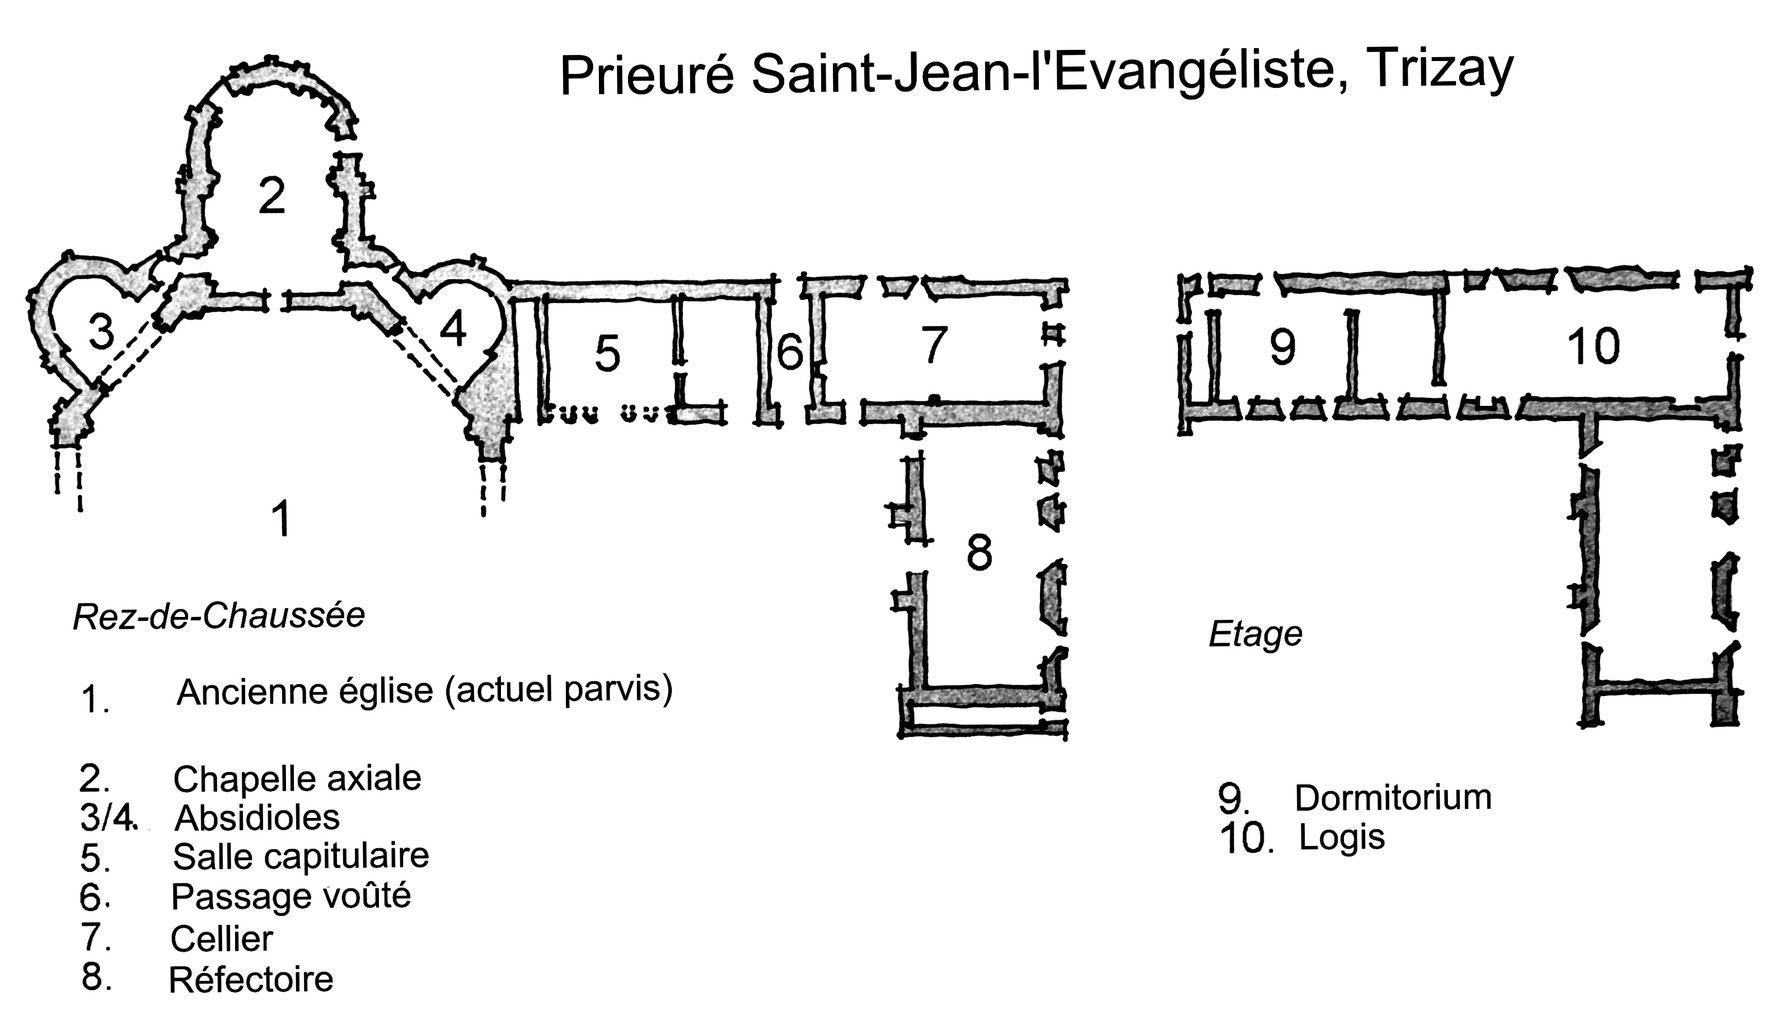 17 trizay plan du prieuré saint jean l évangéliste